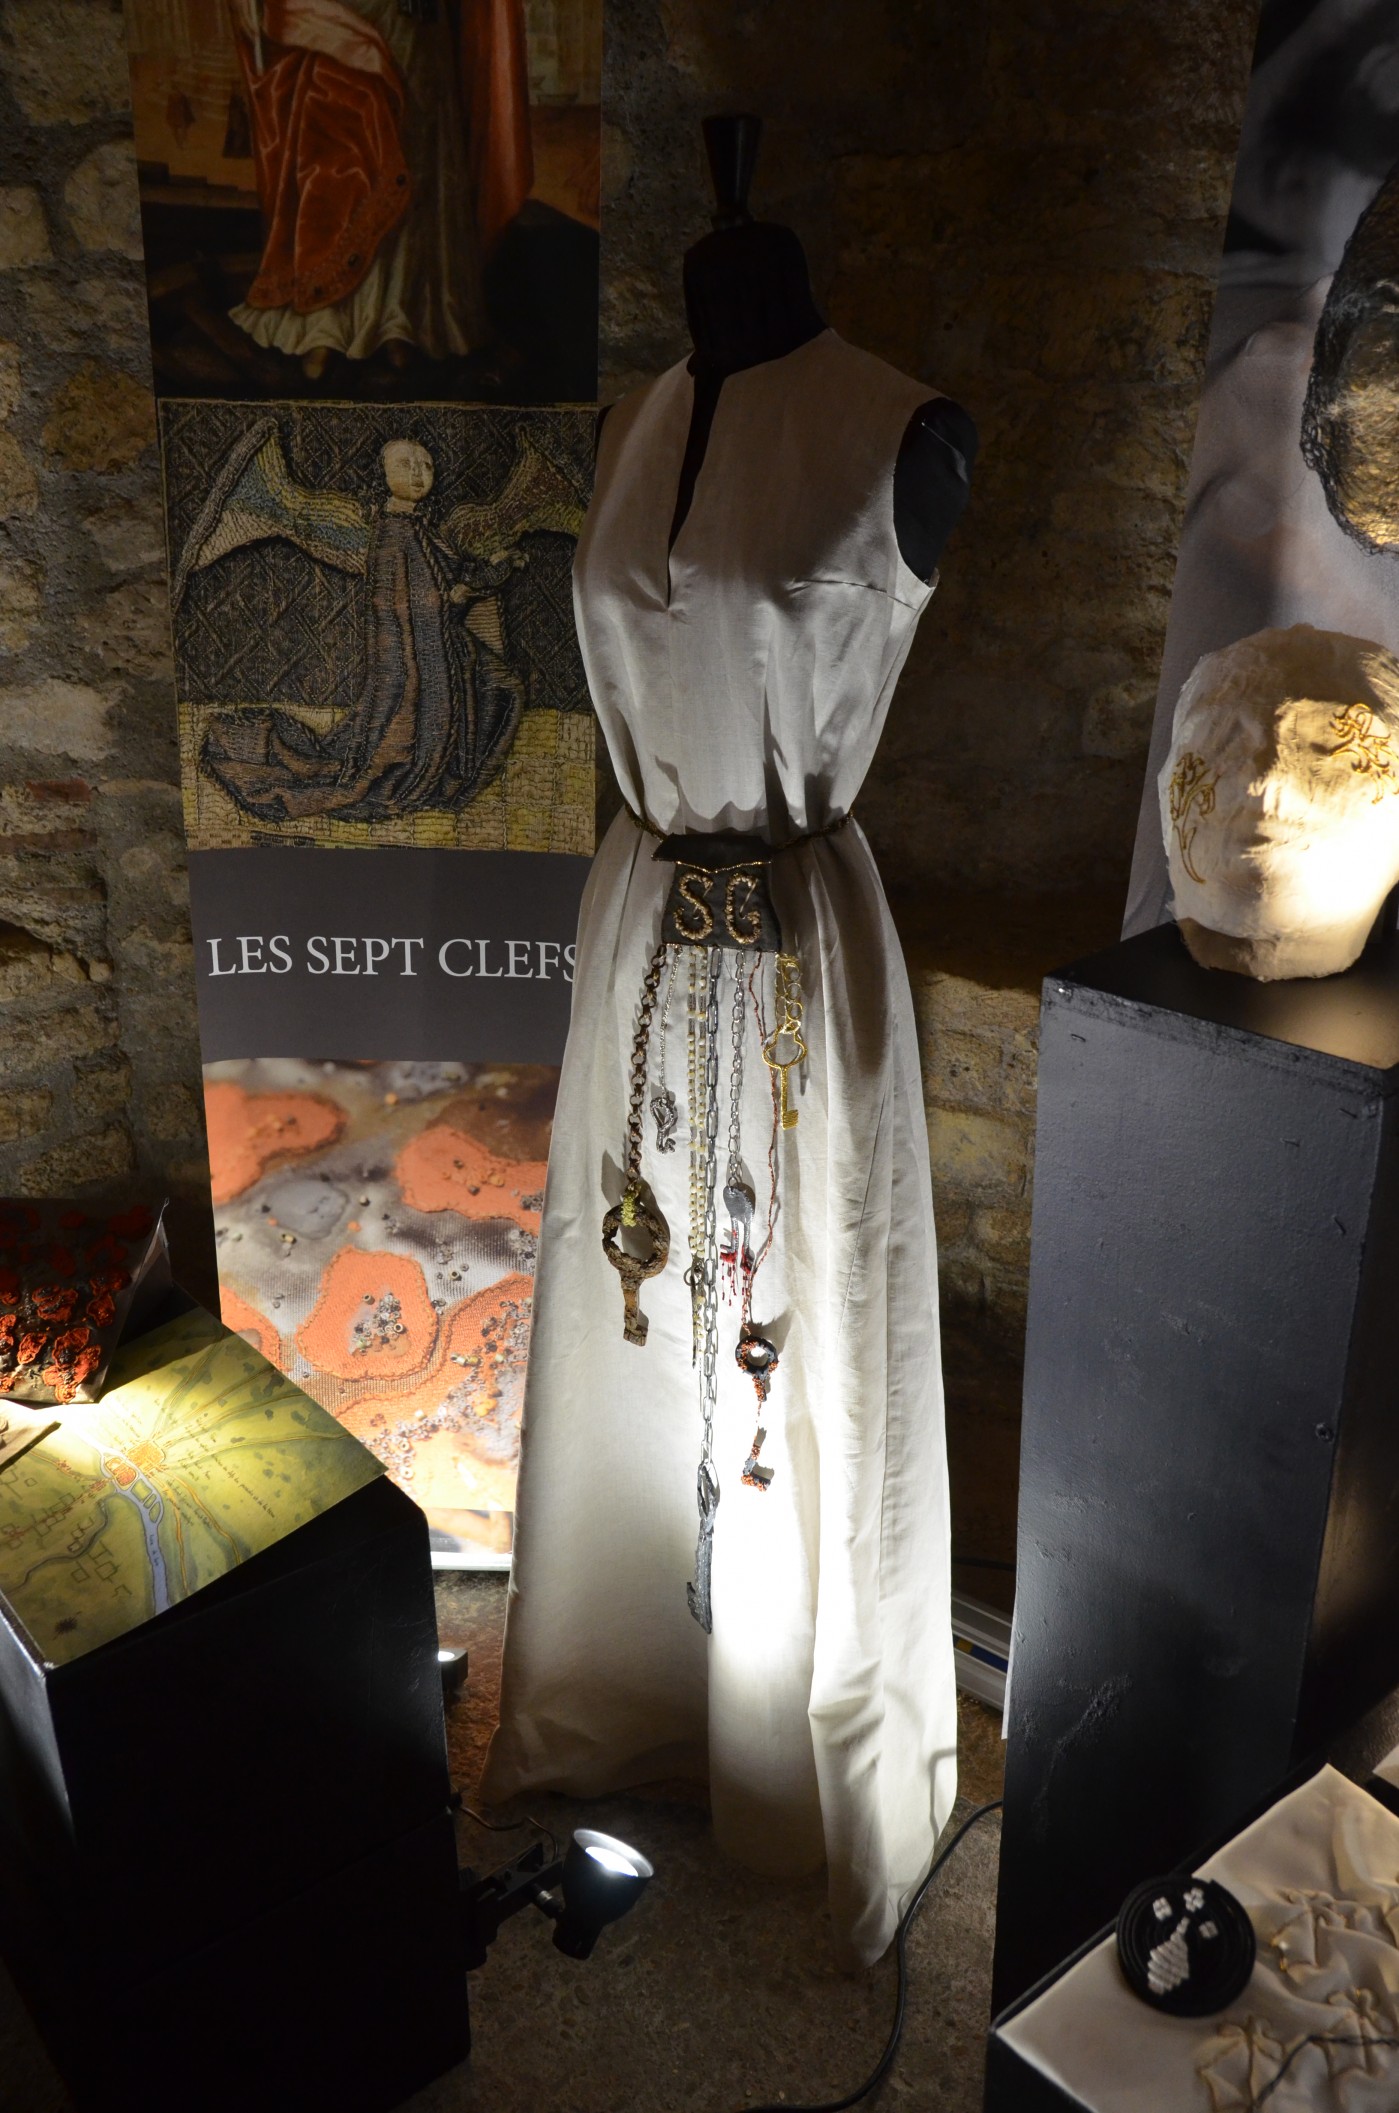 L’art en broderie au Moyen-Âge, partenariat avec le Musée de Cluny